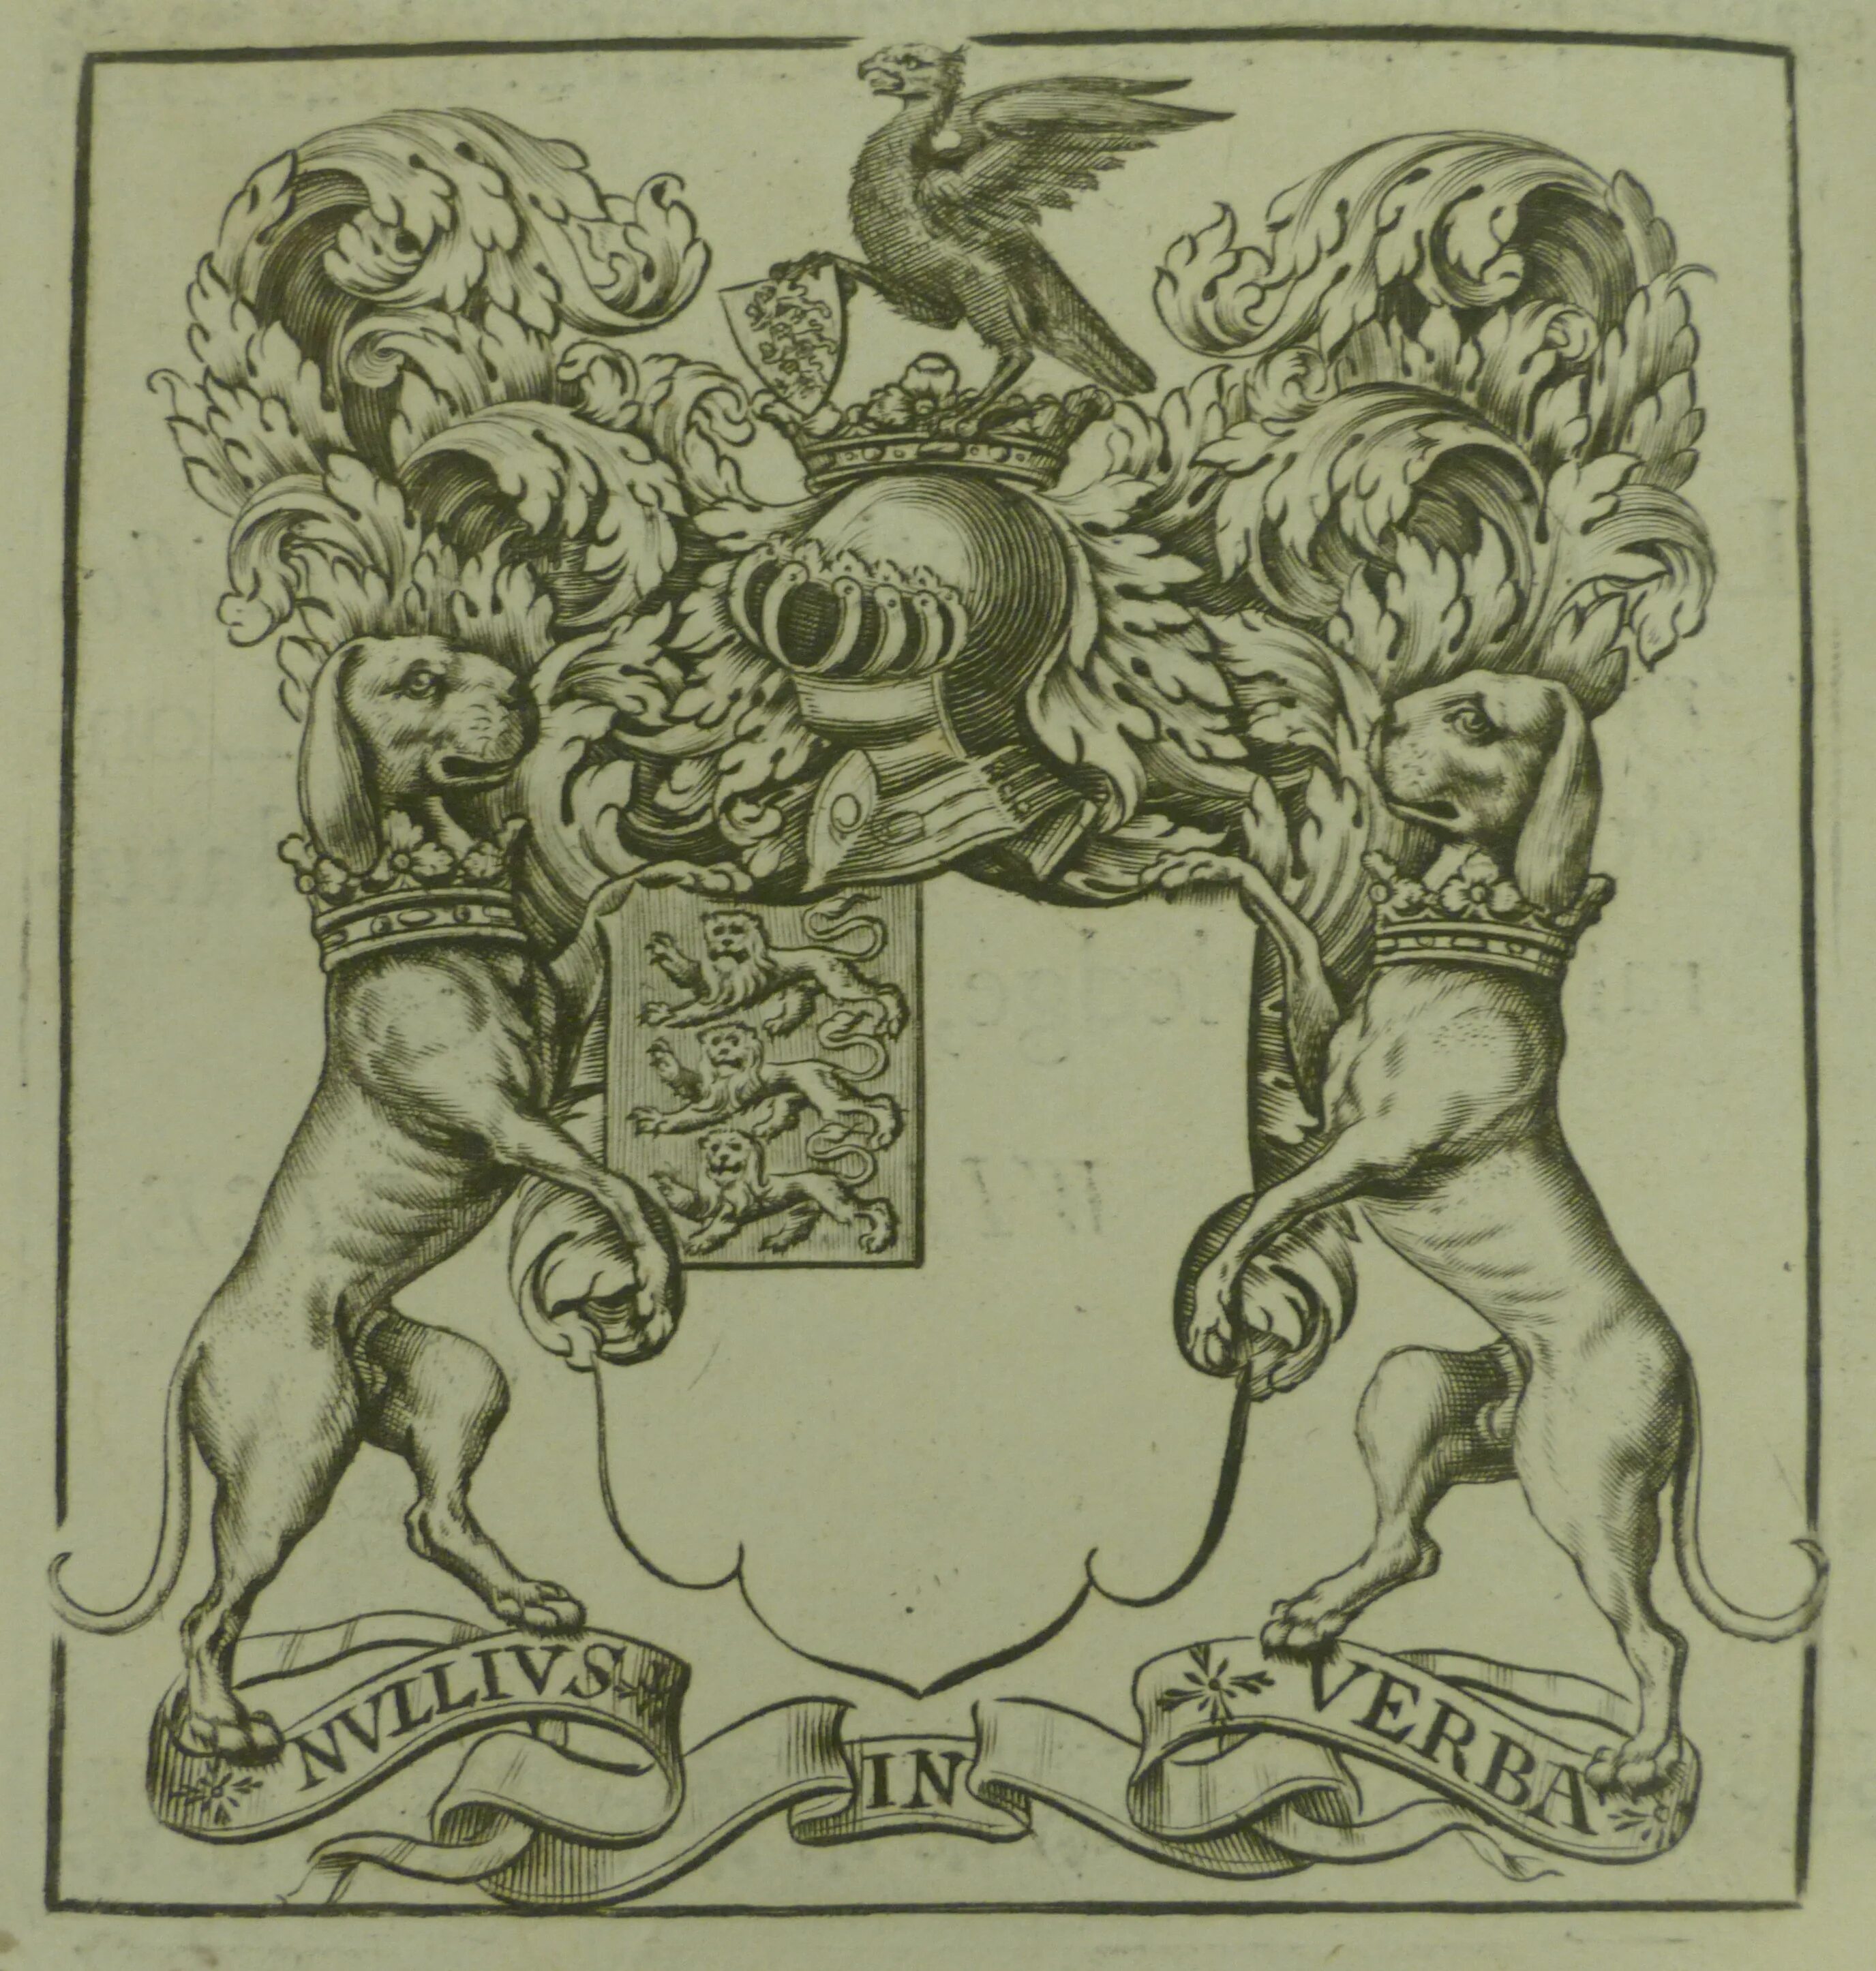 Royal society. Королевское общество (Royal Society). Лондонское Королевское общество 1660. Герб королевского общества.